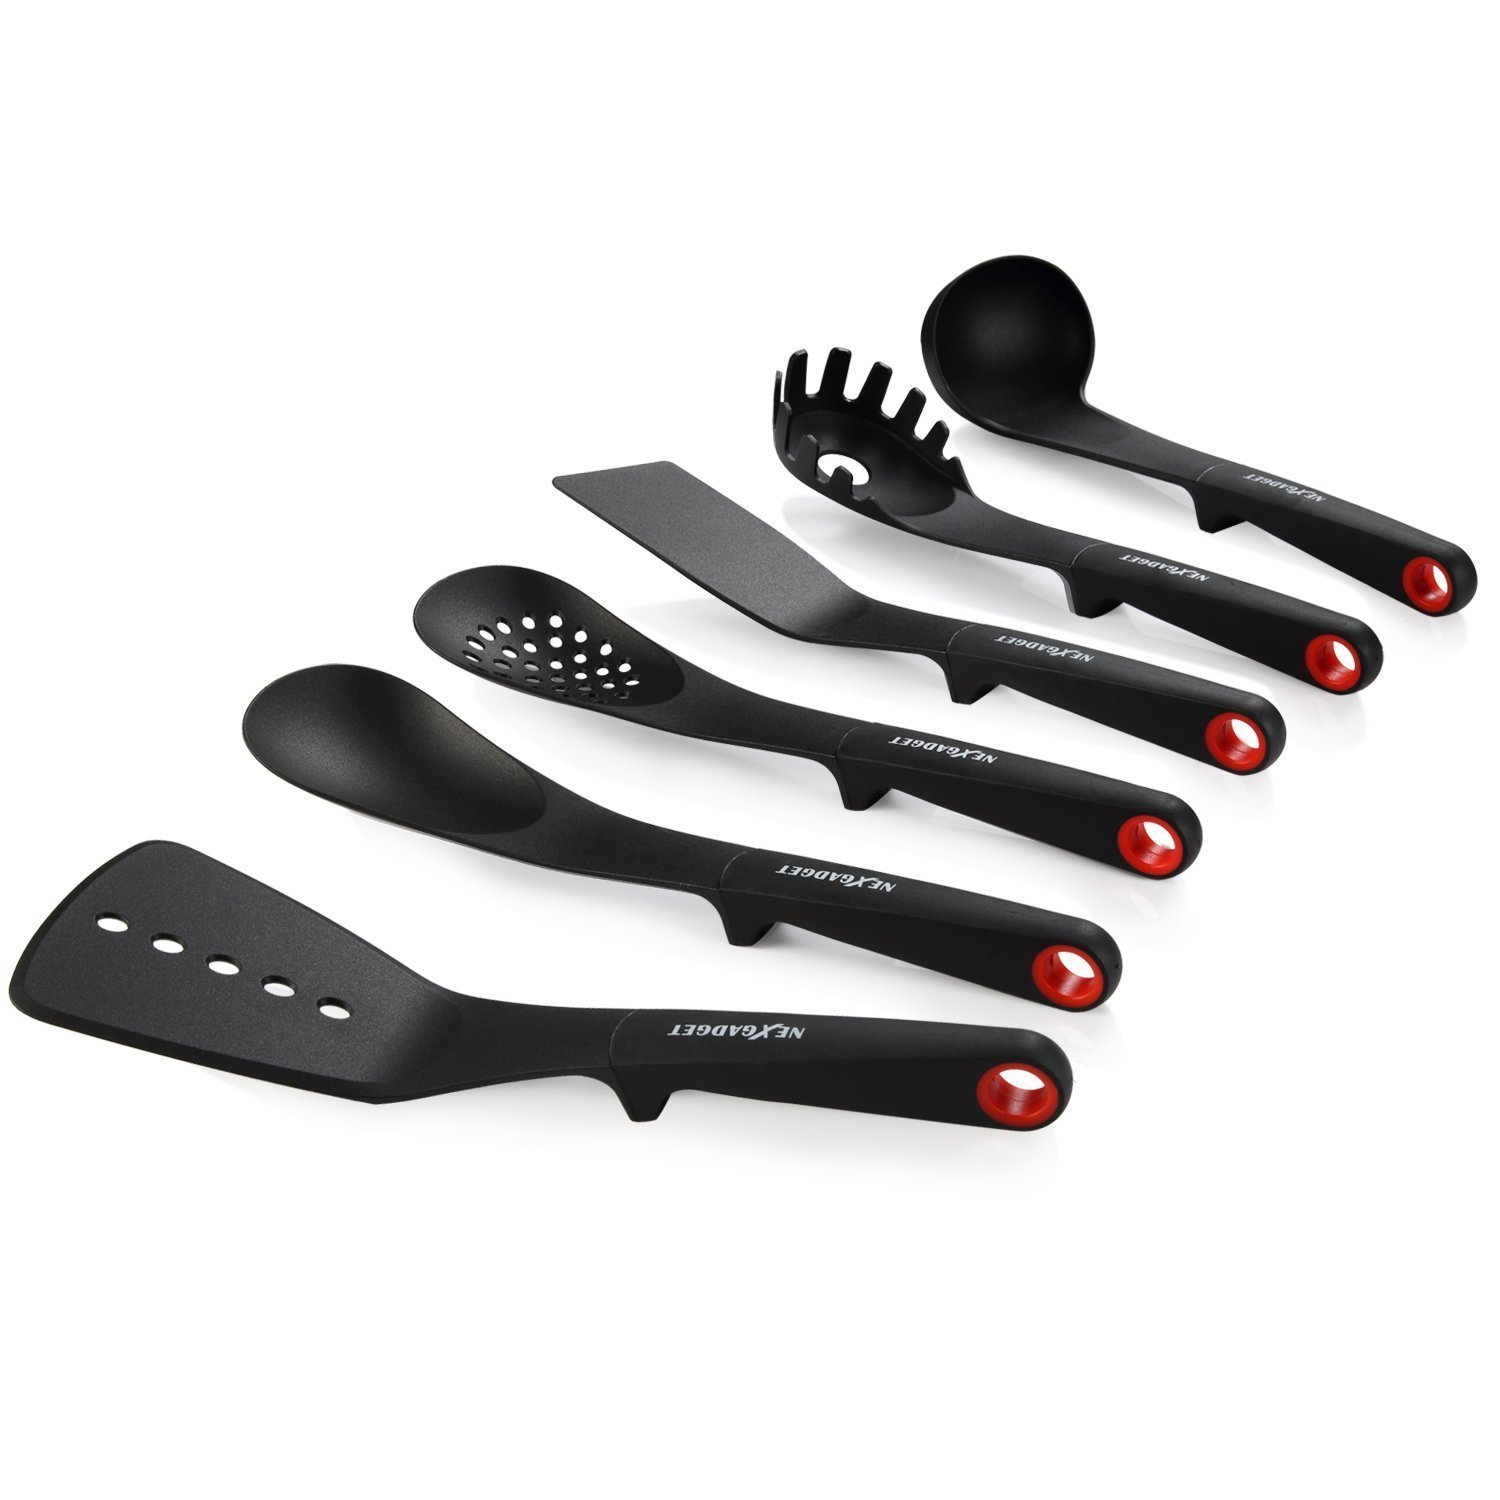 NEXGADGET 7- Piece Kitchen Nylon and Stainless Steel utensils - stainless kitchen cooking utensil set